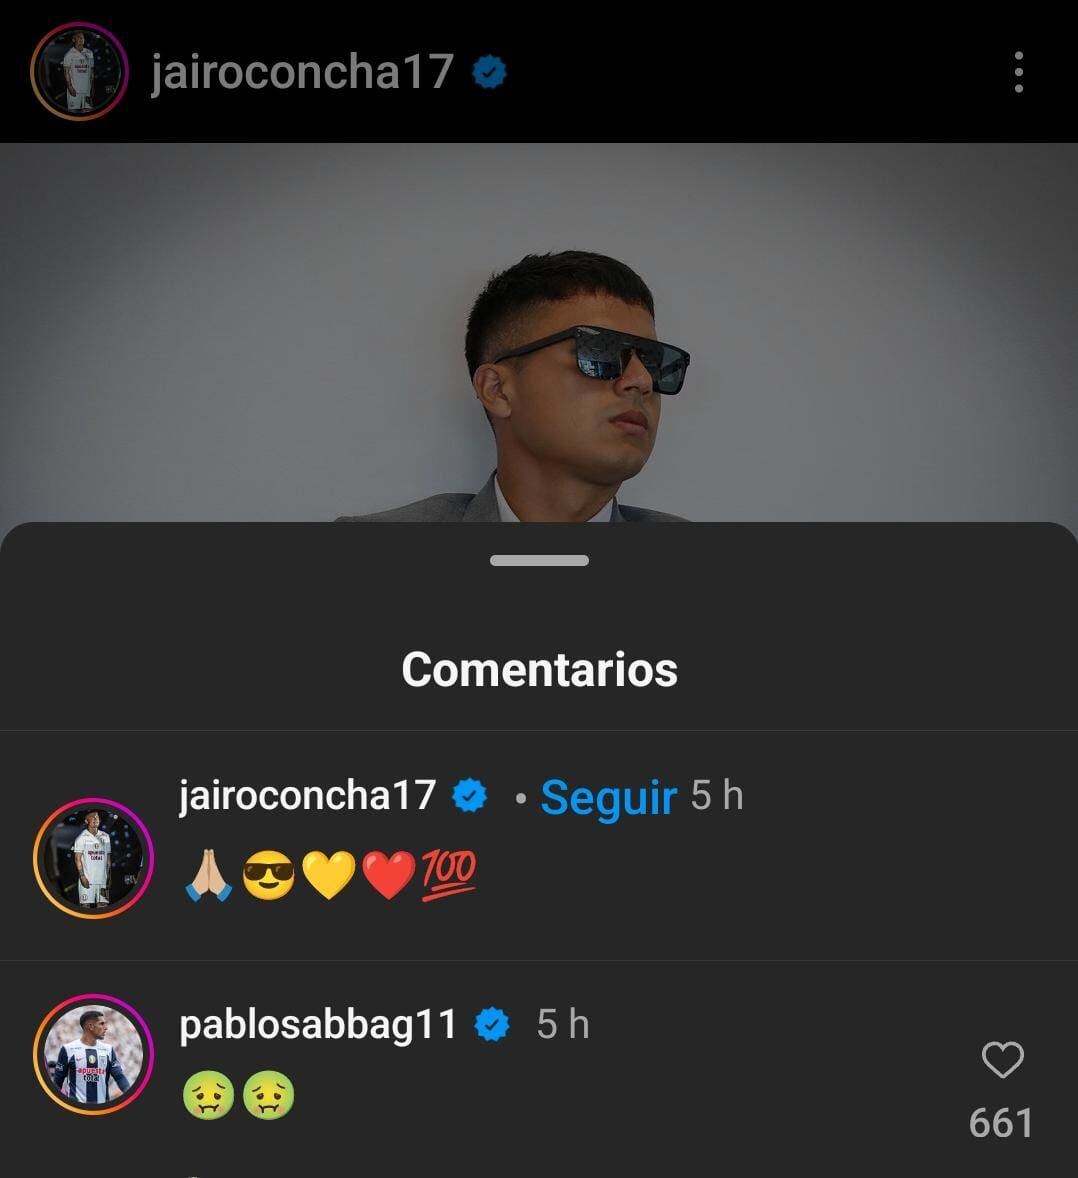 El comentario de Pablo Sabbag en la publicación de Jairo Concha. (Imagen: Captura de Instagram)